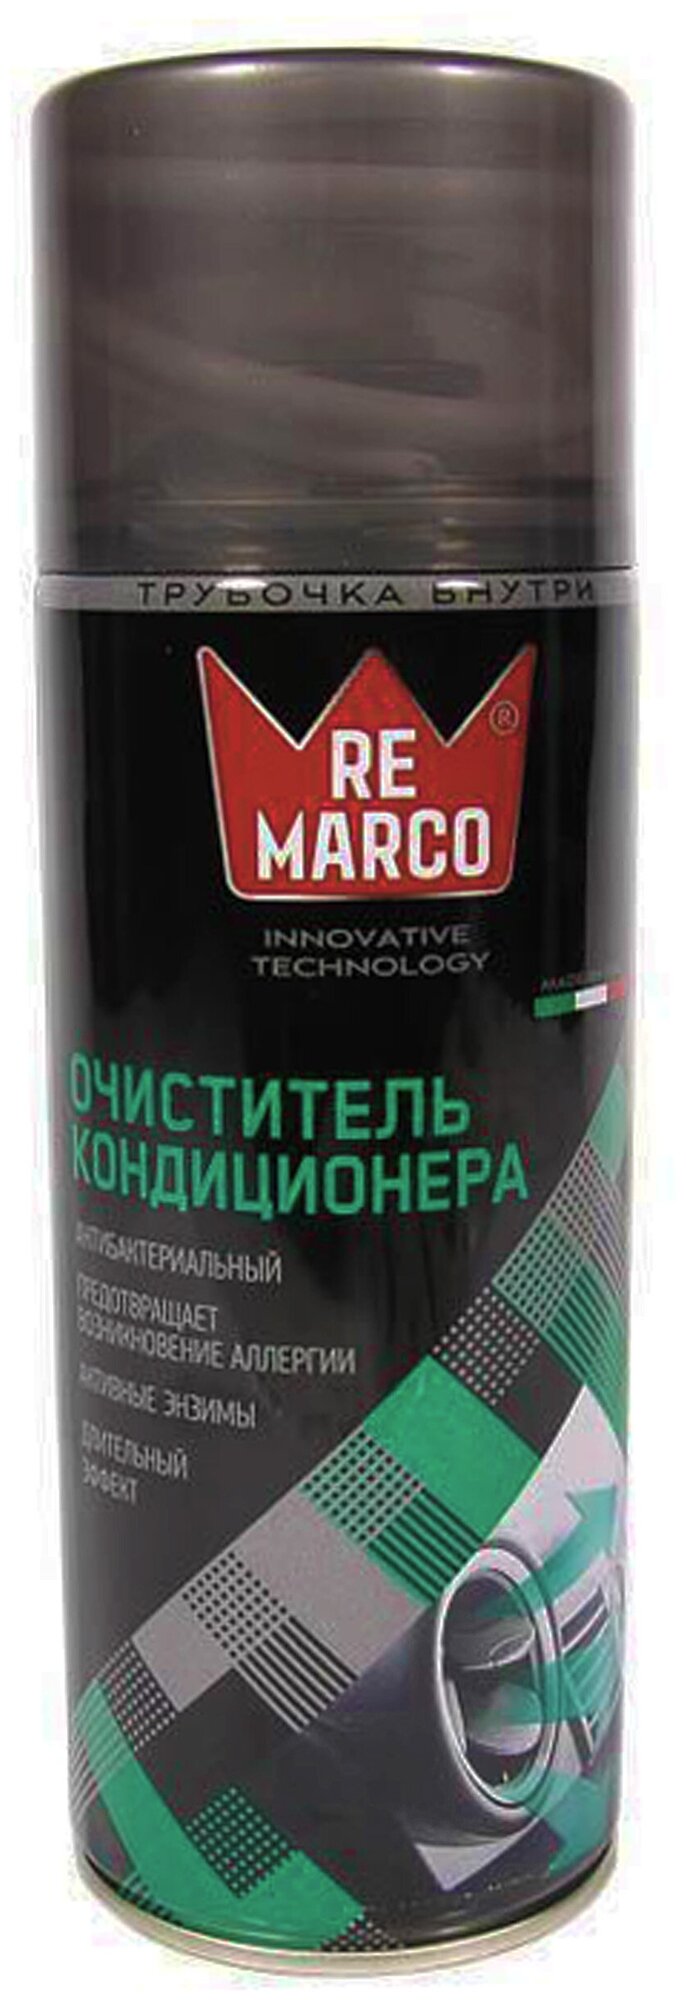 Очиститель кондиционера автомобиля и системы вентиляции (пенный аэрозоль) арбуз RE MARCO PL011watermelon 400 мл.